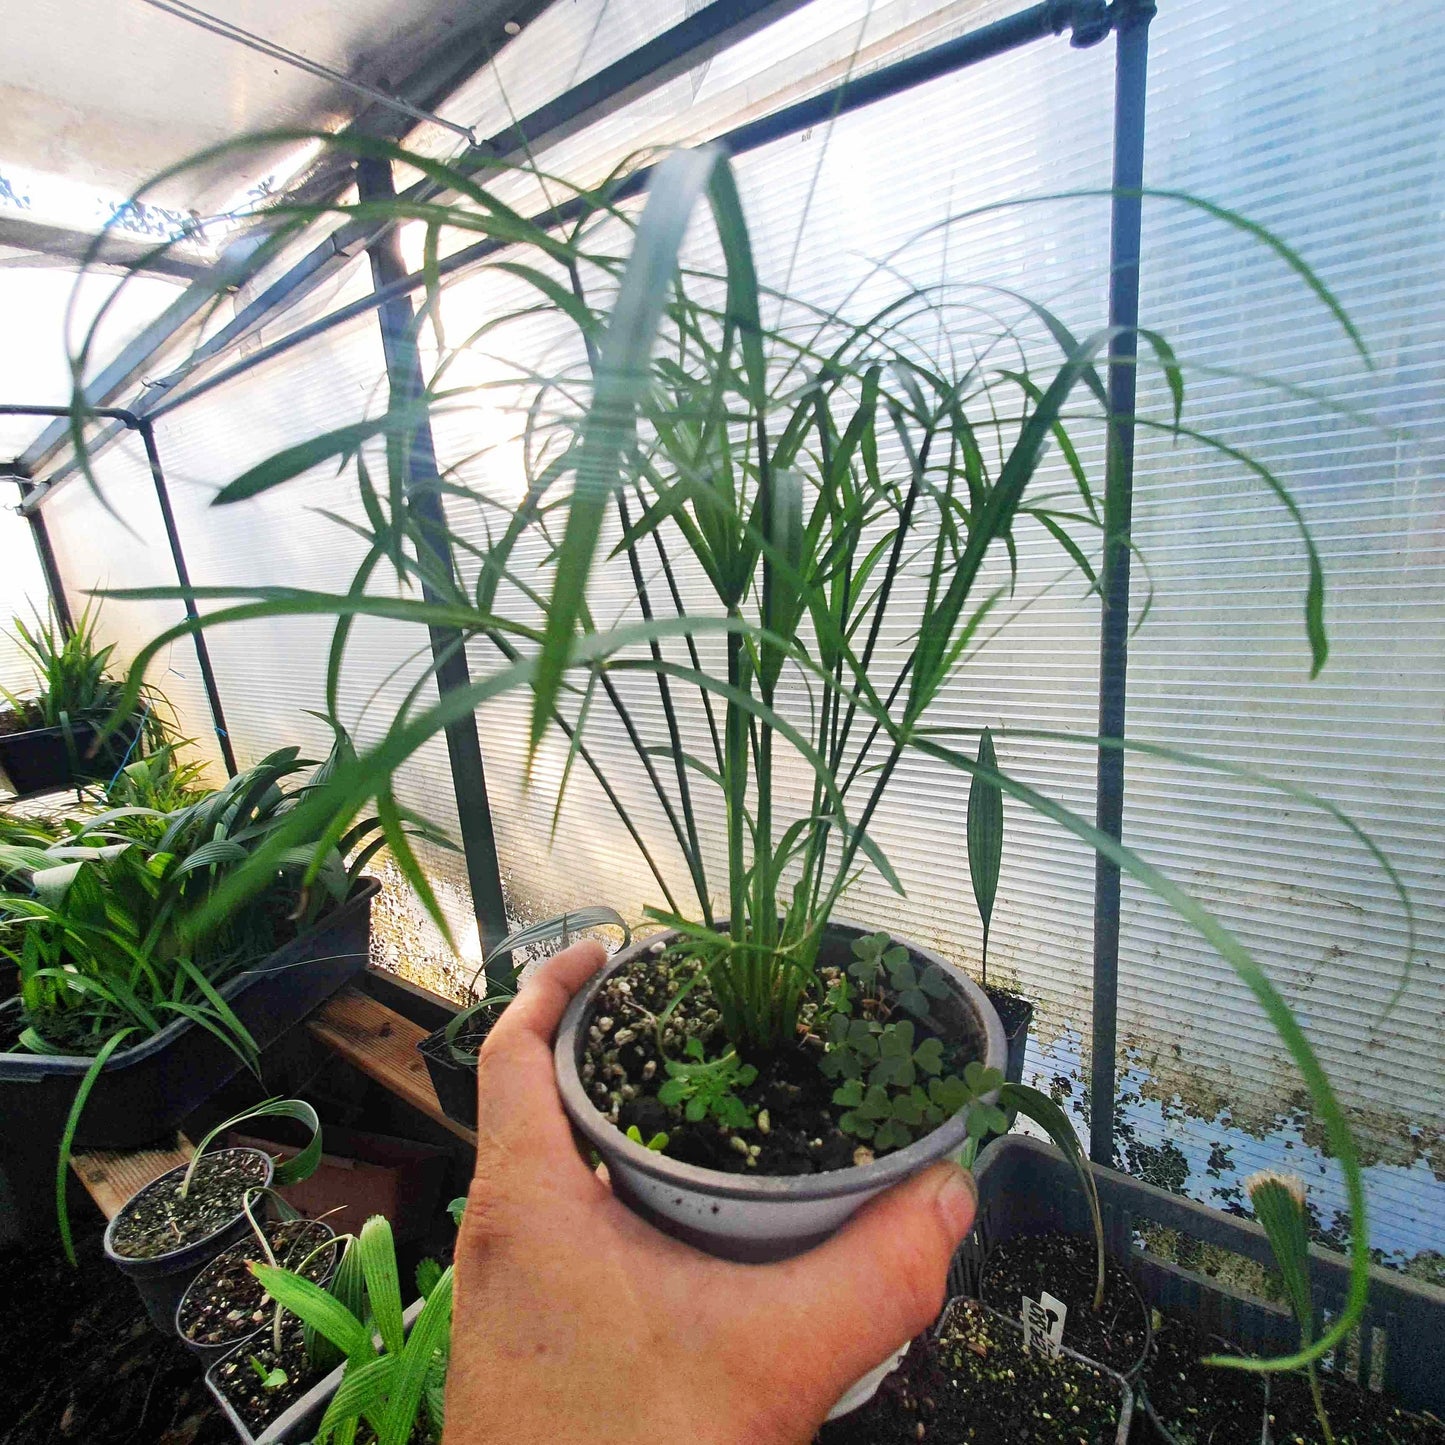 Cyperus alternifolius - Umbrella papyrus -  15-25 cm - Plant